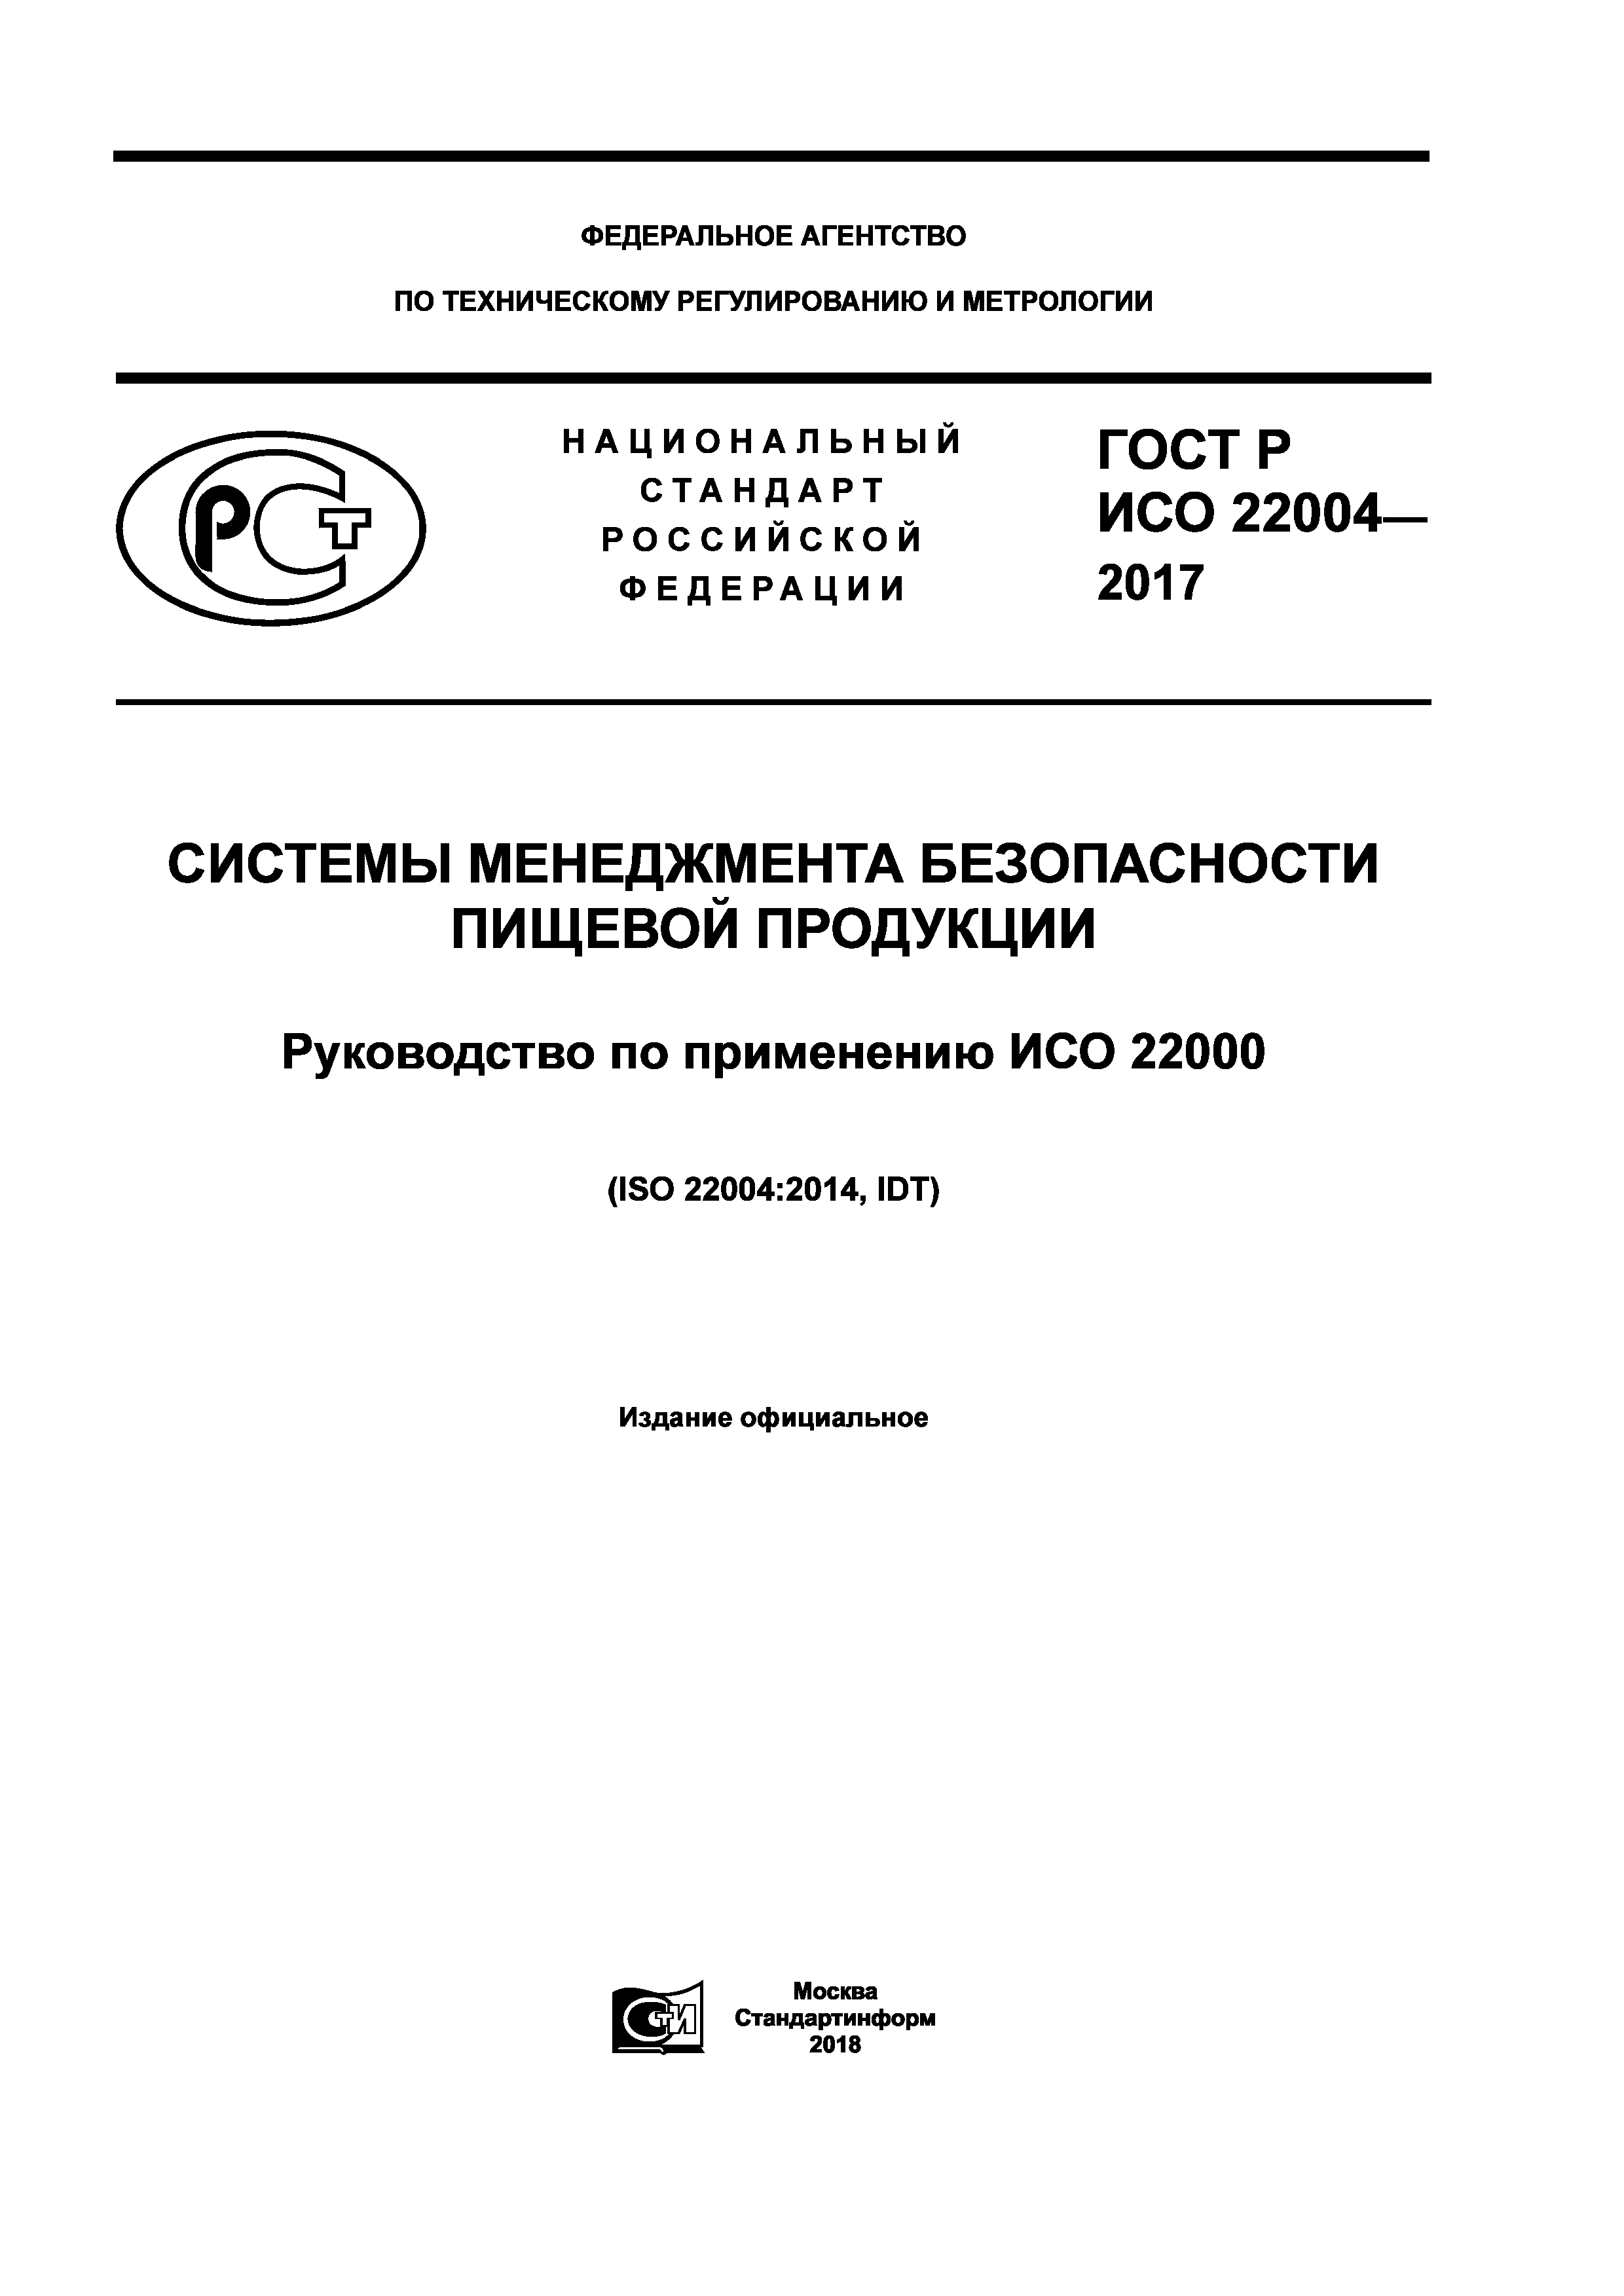 ГОСТ Р ИСО 22004-2017